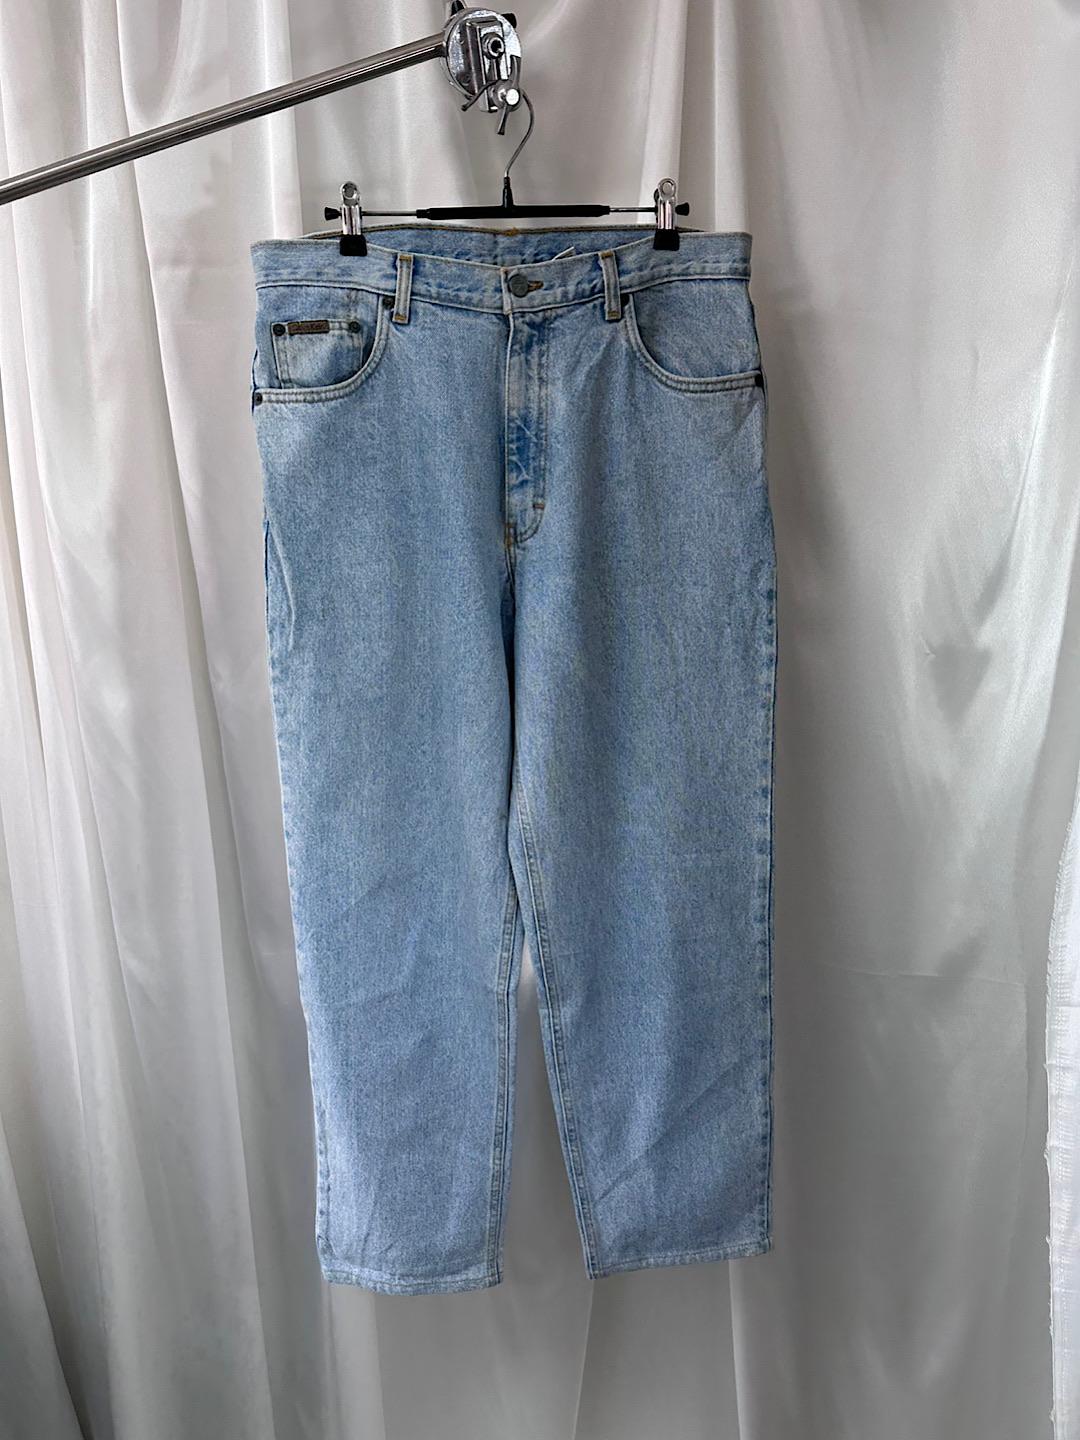 CK denim pants (33) (made in U.S.A.)